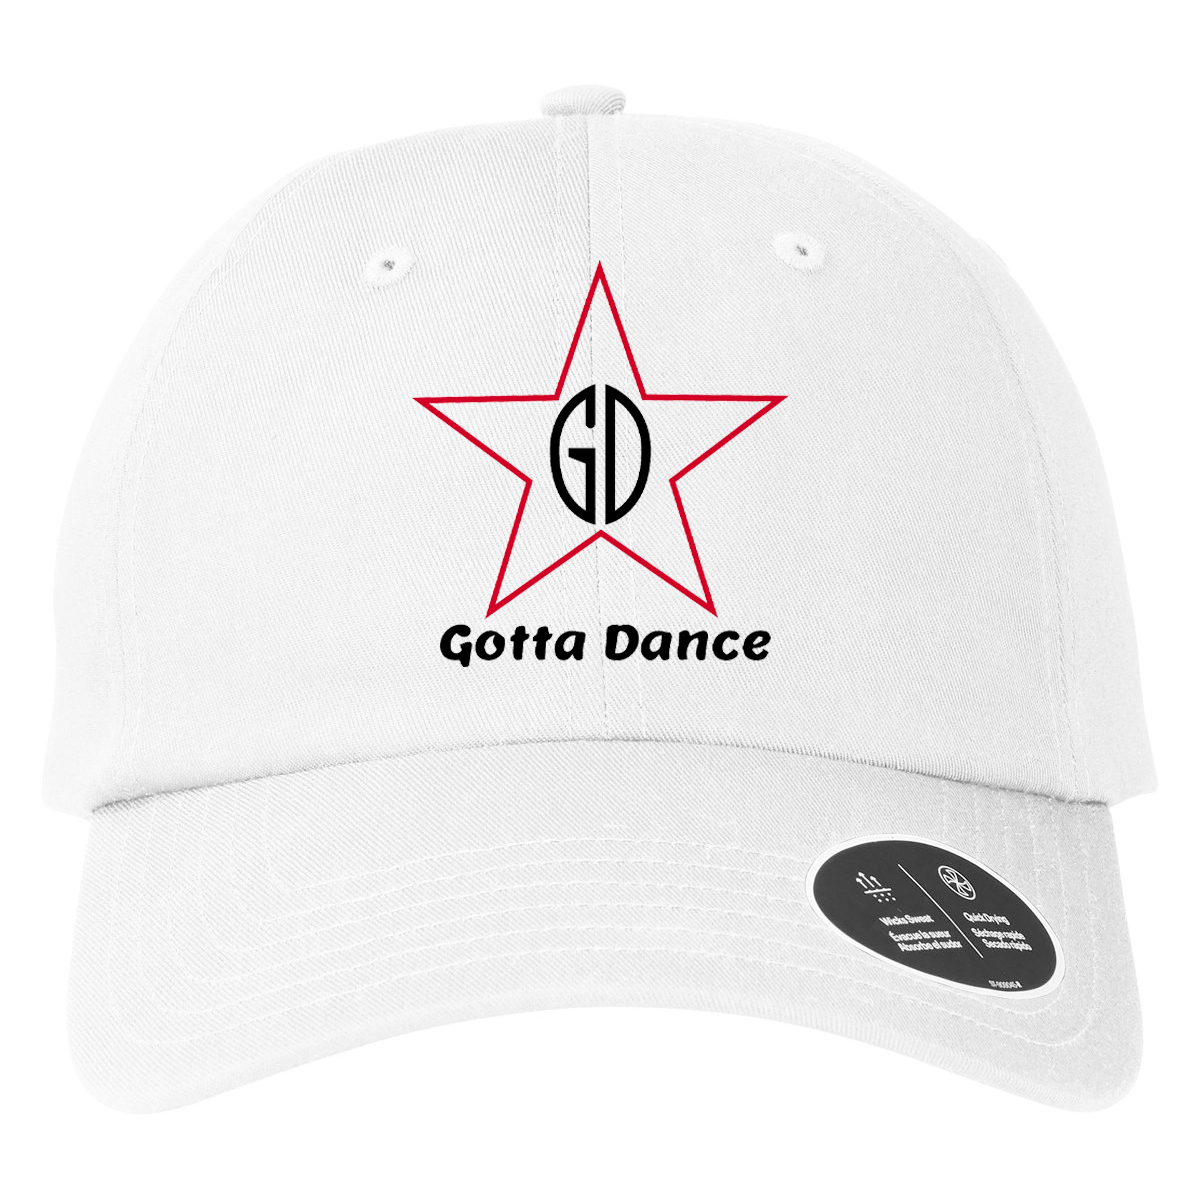 Gotta Dance Under Armour Team Chino Hat